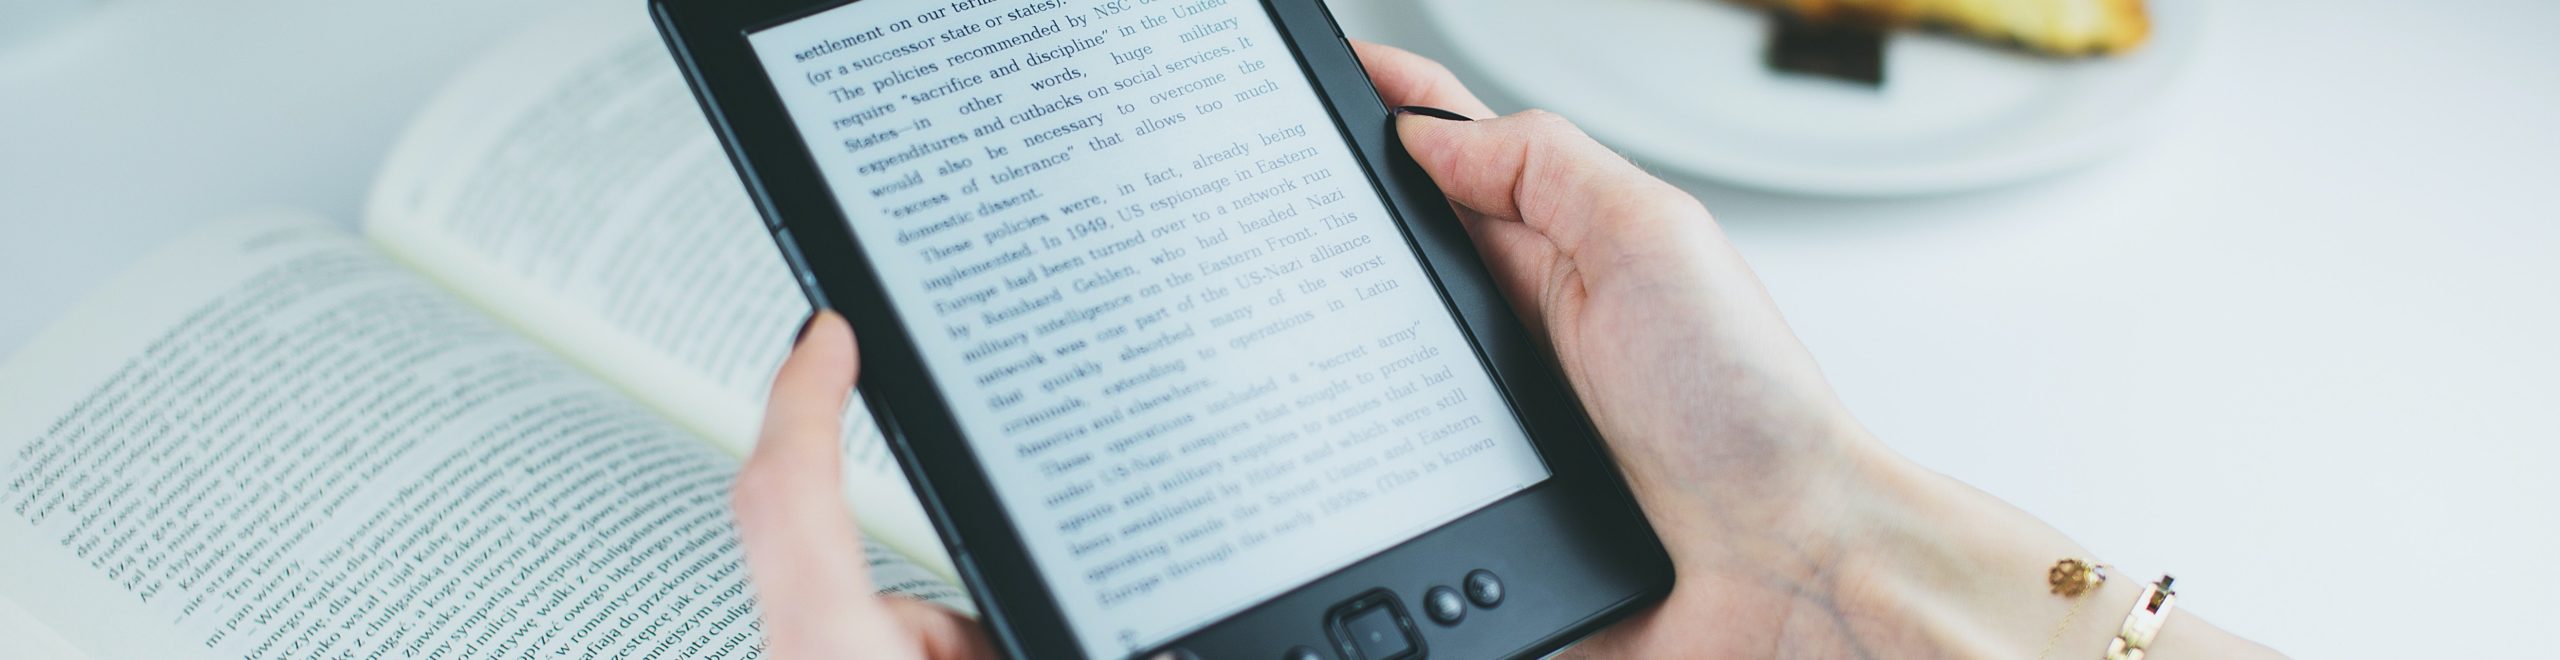 Ebook – Quelles perspectives d'avenir pour les livres numériques